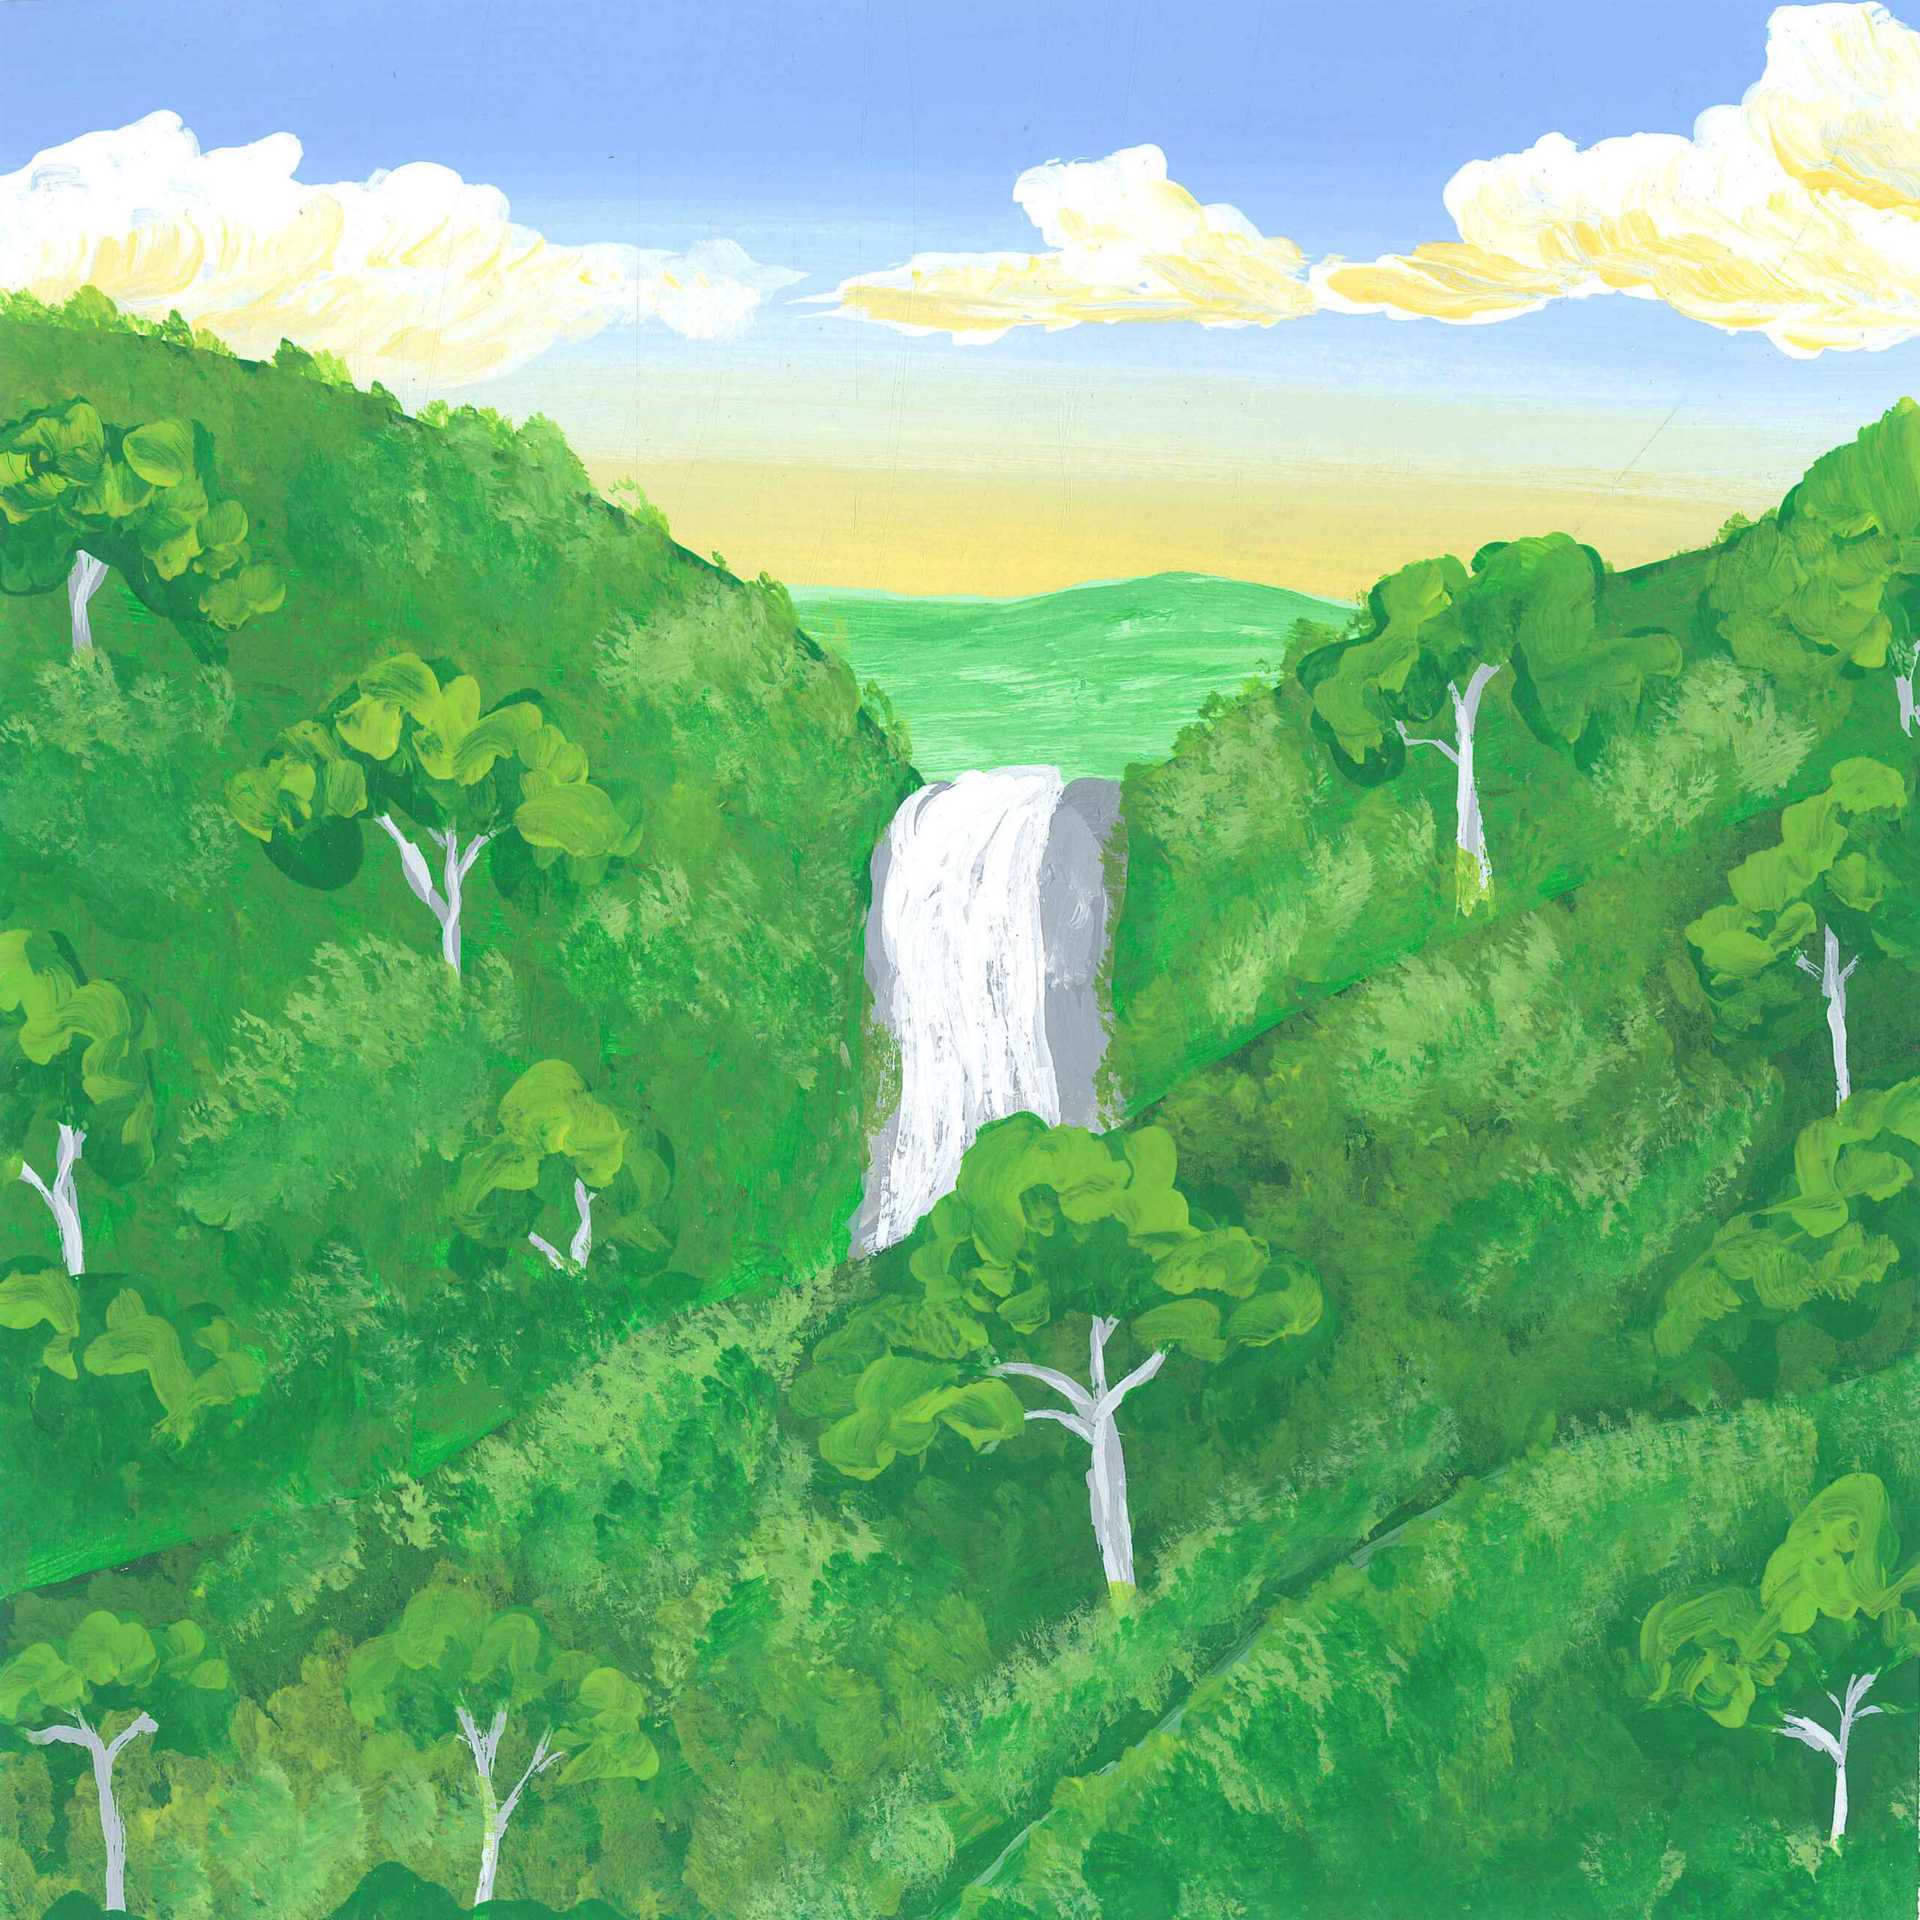 Jiri Mountain Moss Waterfall - nature landscape painting - earth.fm